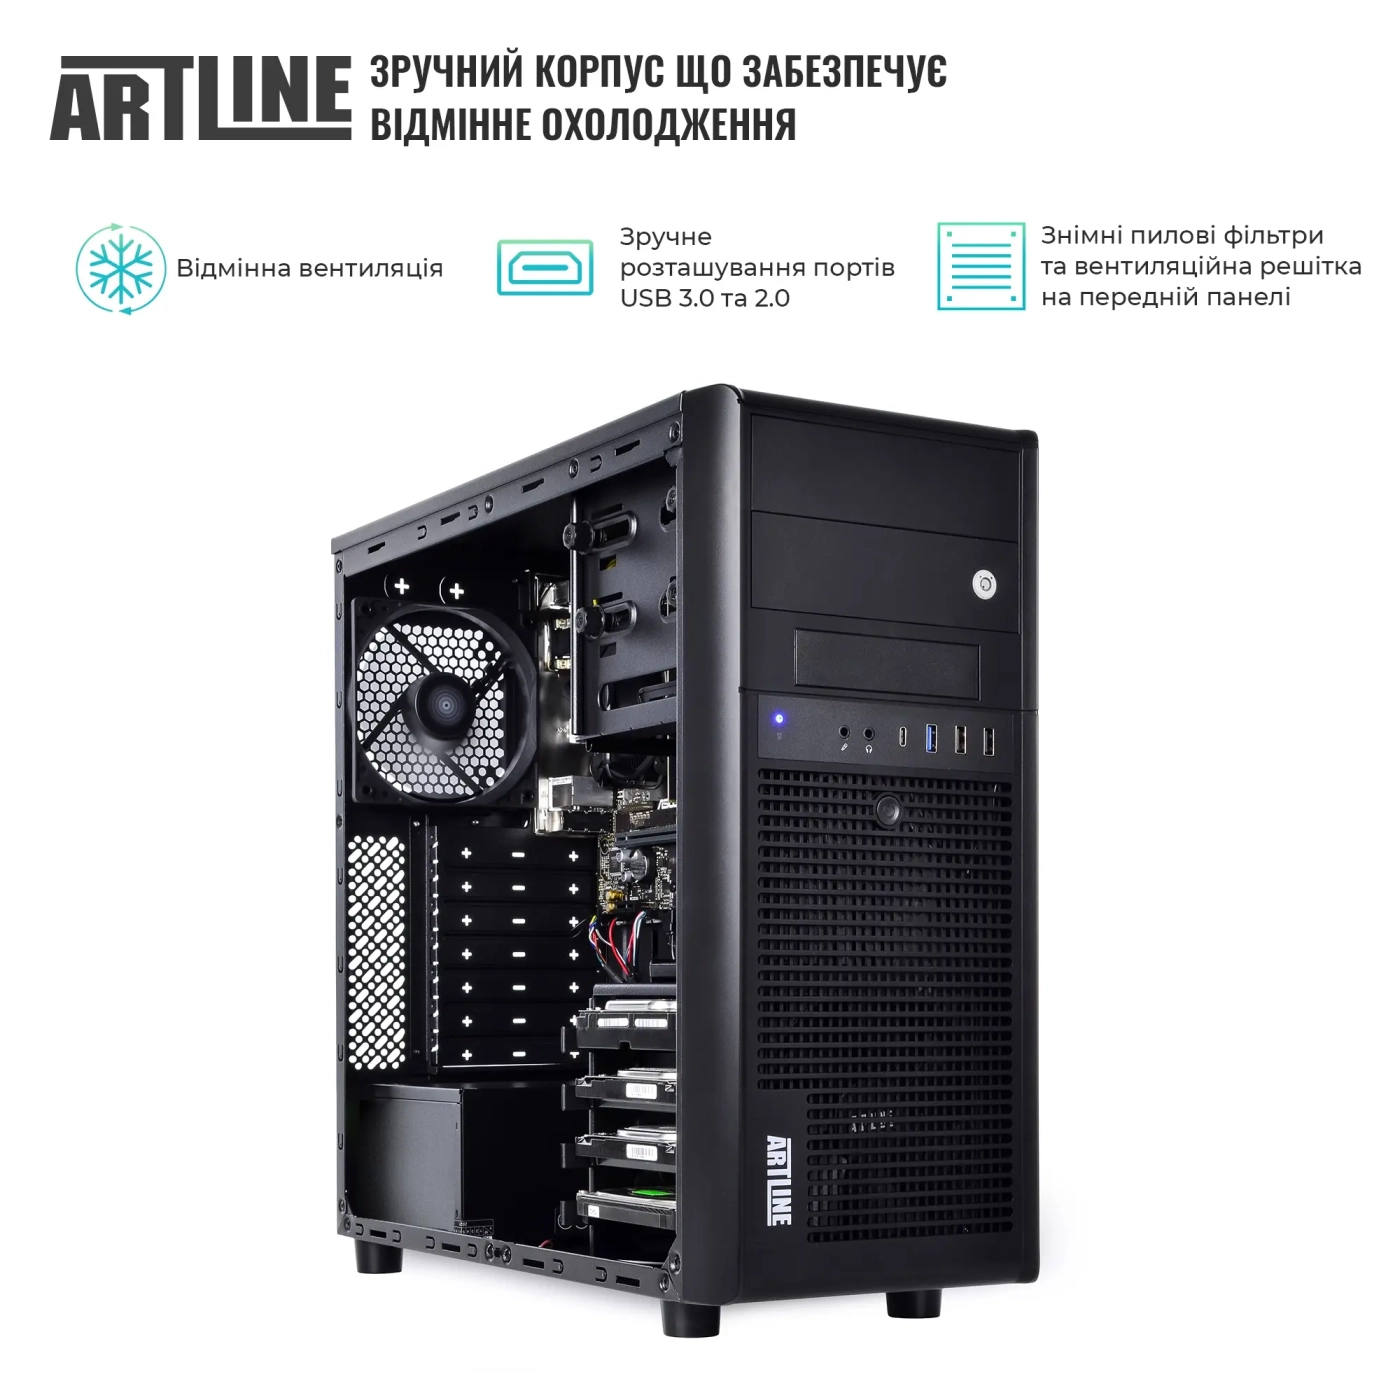 Купить Сервер ARTLINE Business T34 (T34v28) - фото 3